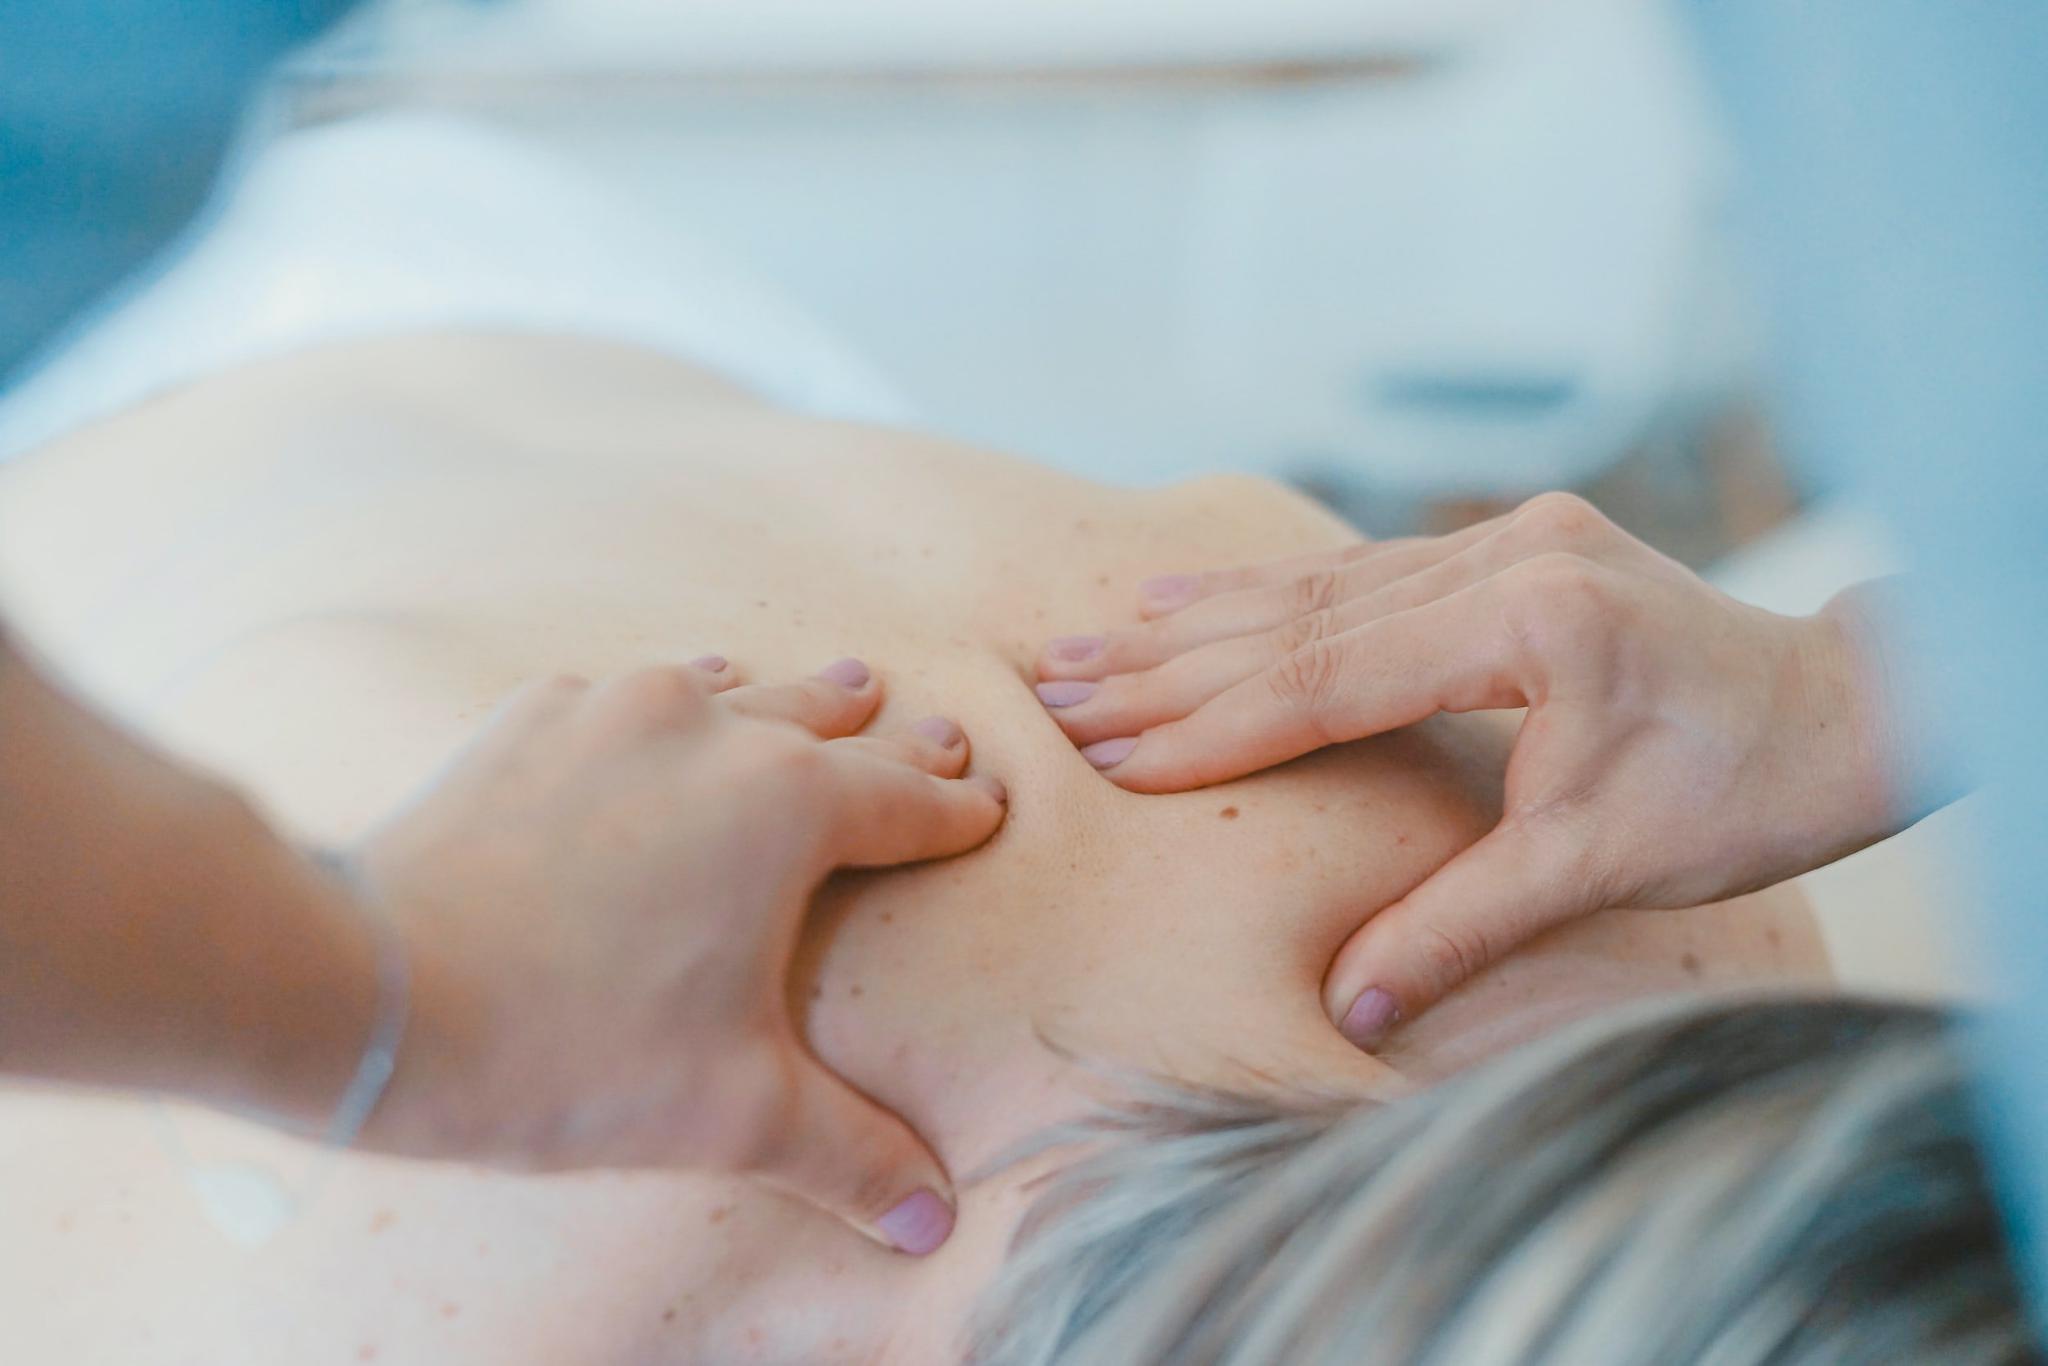 Рефлекторно сегментарный массаж спины в Ист Клиник